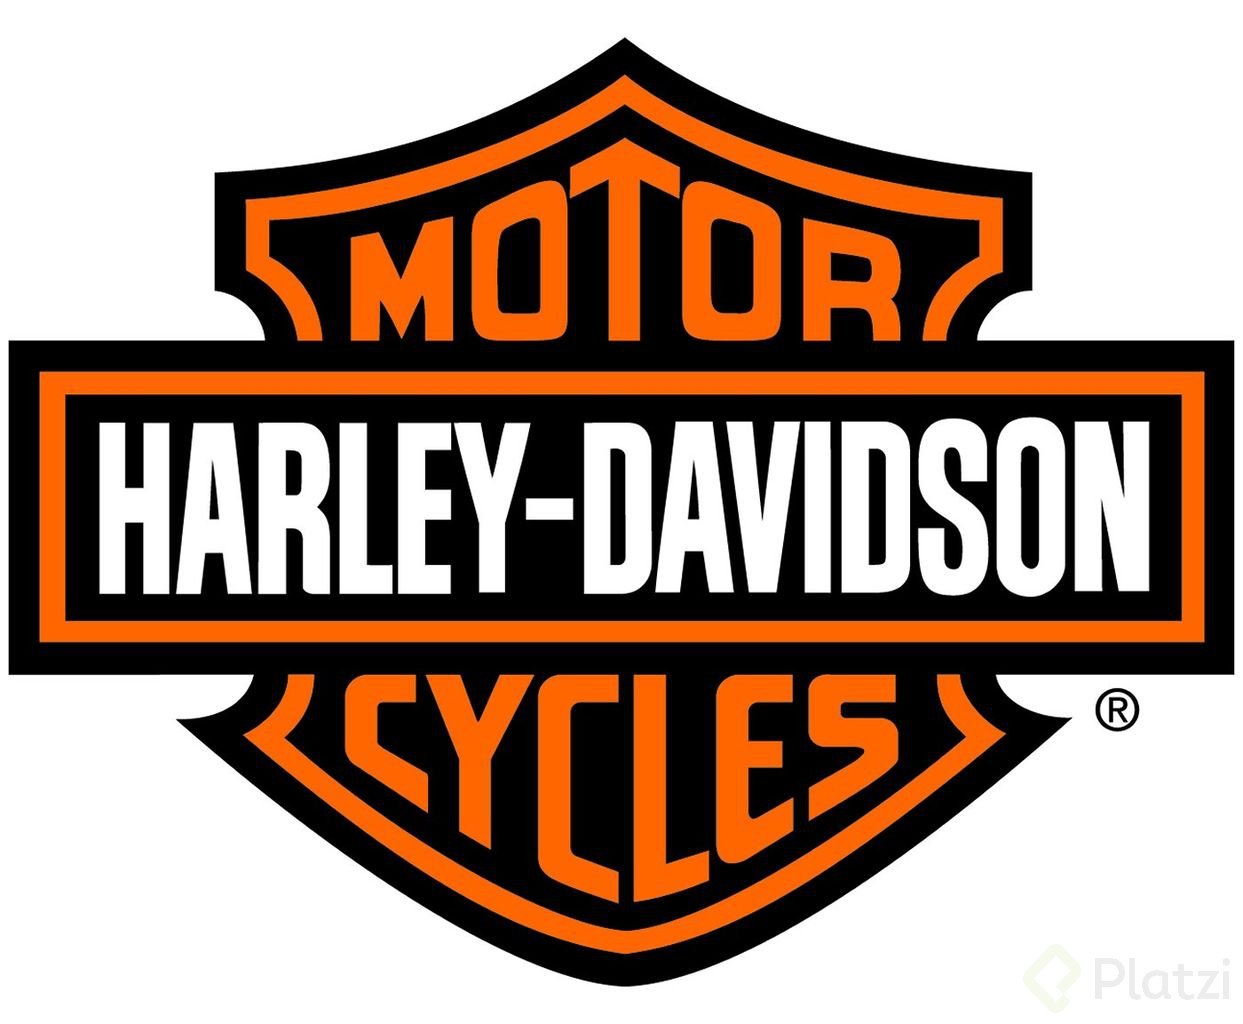 1243px-Harley_davidson_logo.jpg